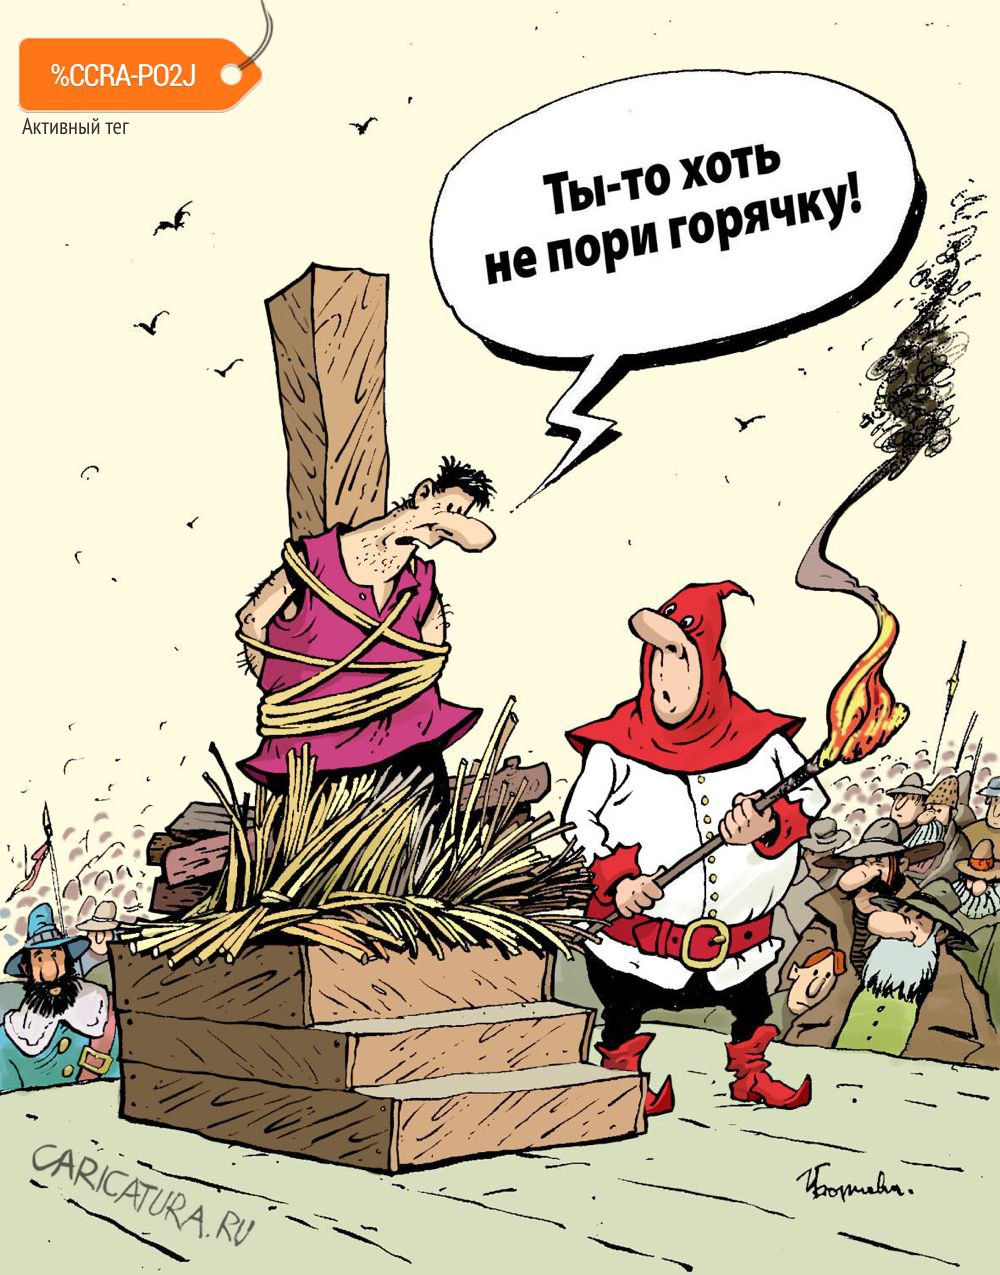 Карикатура "Не пори горячку", Игорь Елистратов